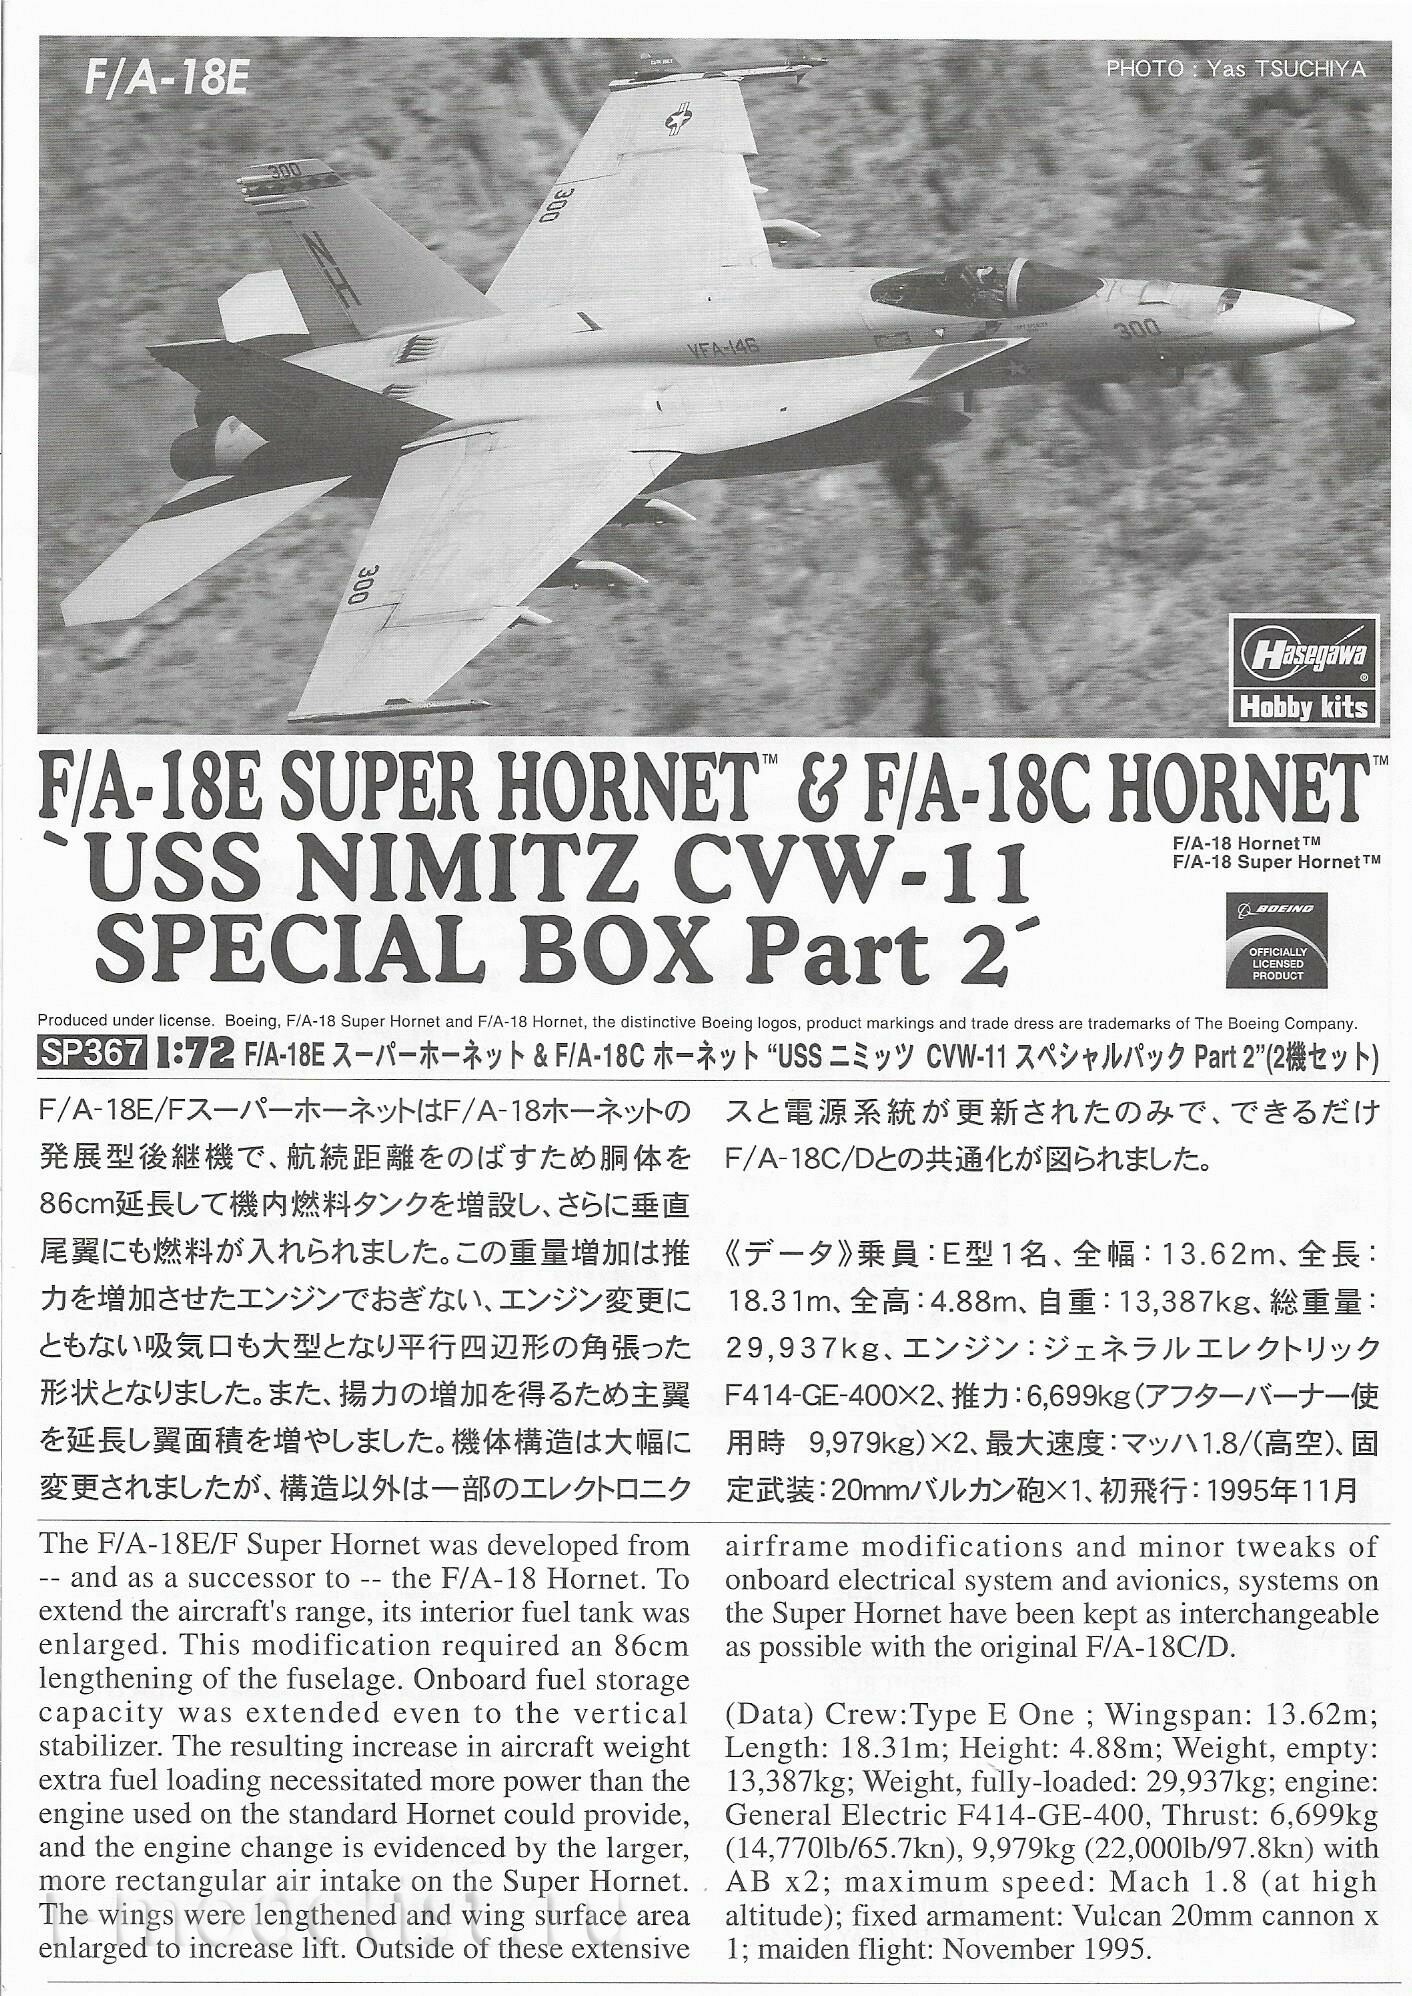 52167 Hasegawa 1/72 Aircraft F/A-18E Super Hornet & F/A-18C Hornet